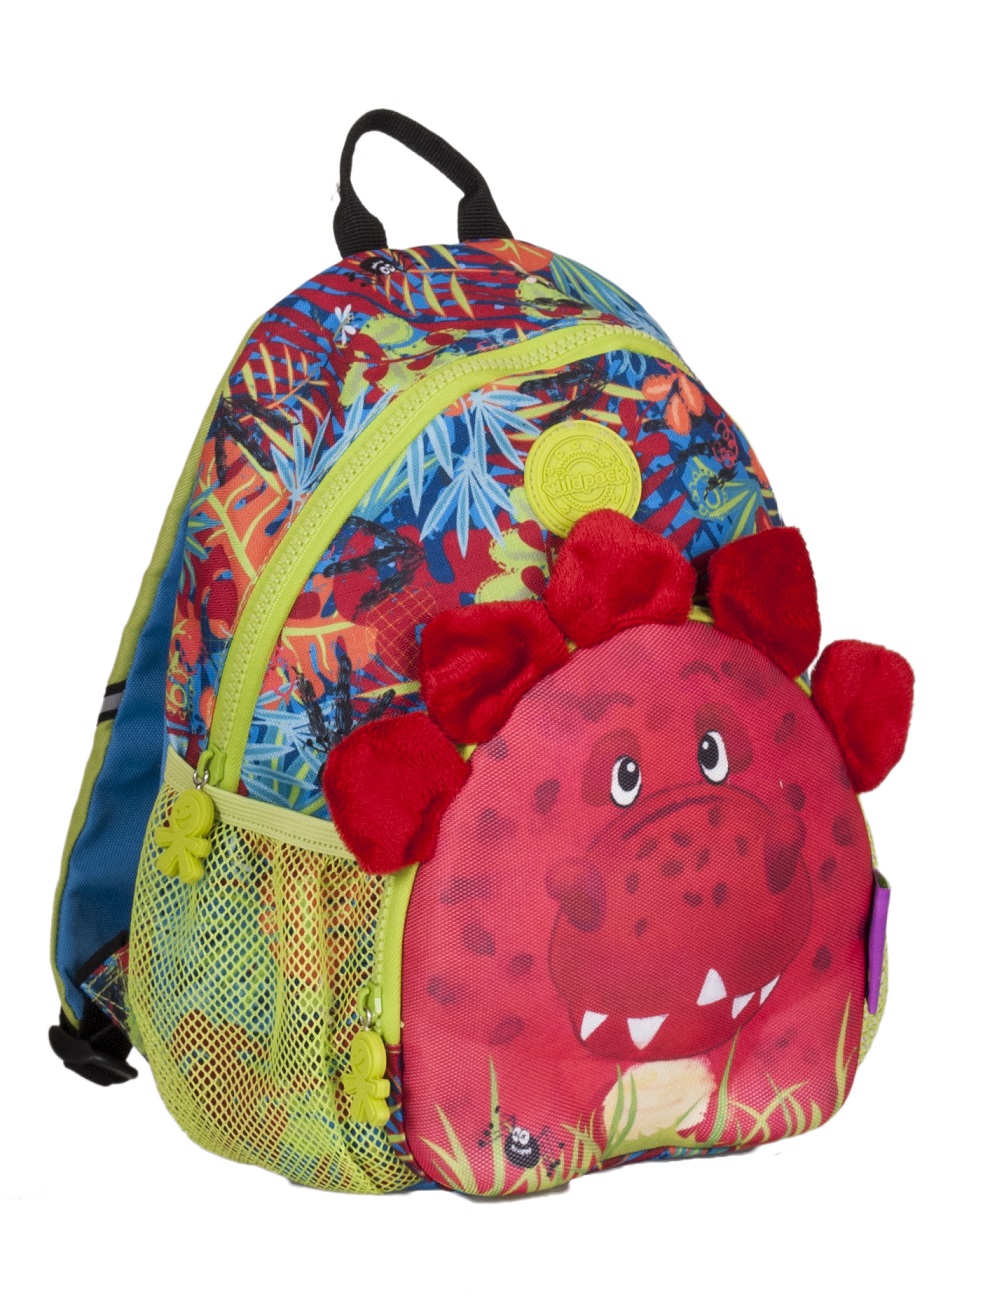 Okiedog Wildpack Junior Backpack (Assorted)